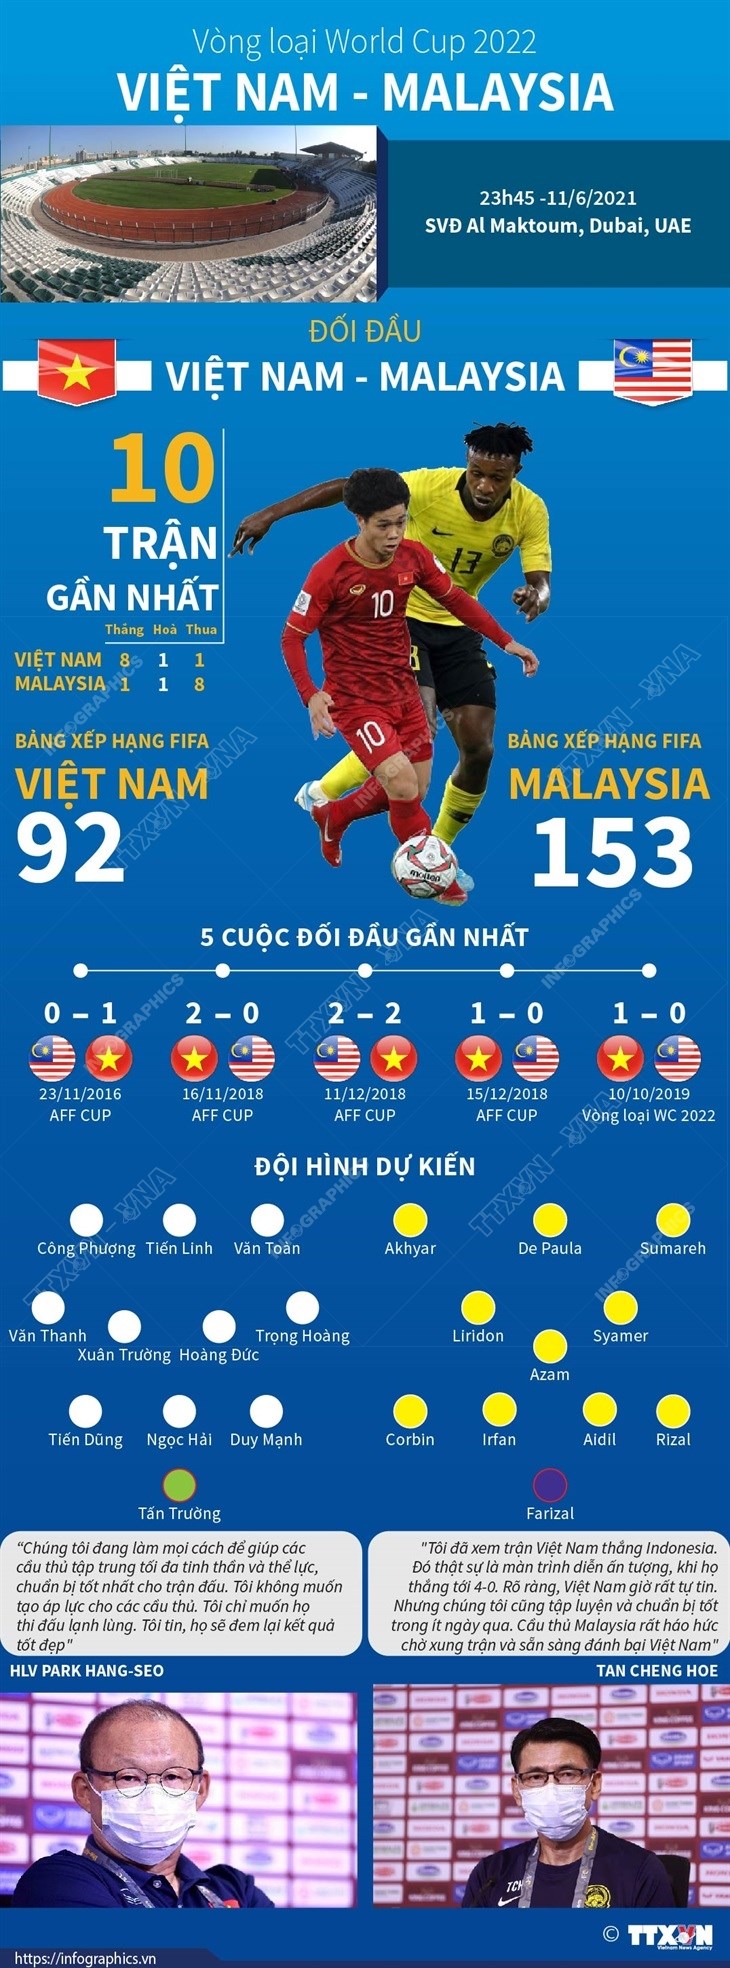 Những thông tin trước trận đấu giữa đội tuyển Việt Nam và Malaysia sẽ giúp bạn hiểu rõ hơn về bối cảnh và tính chất của trận đấu. Hãy cập nhật ngay để không bỏ sót bất kỳ chi tiết quan trọng nào!